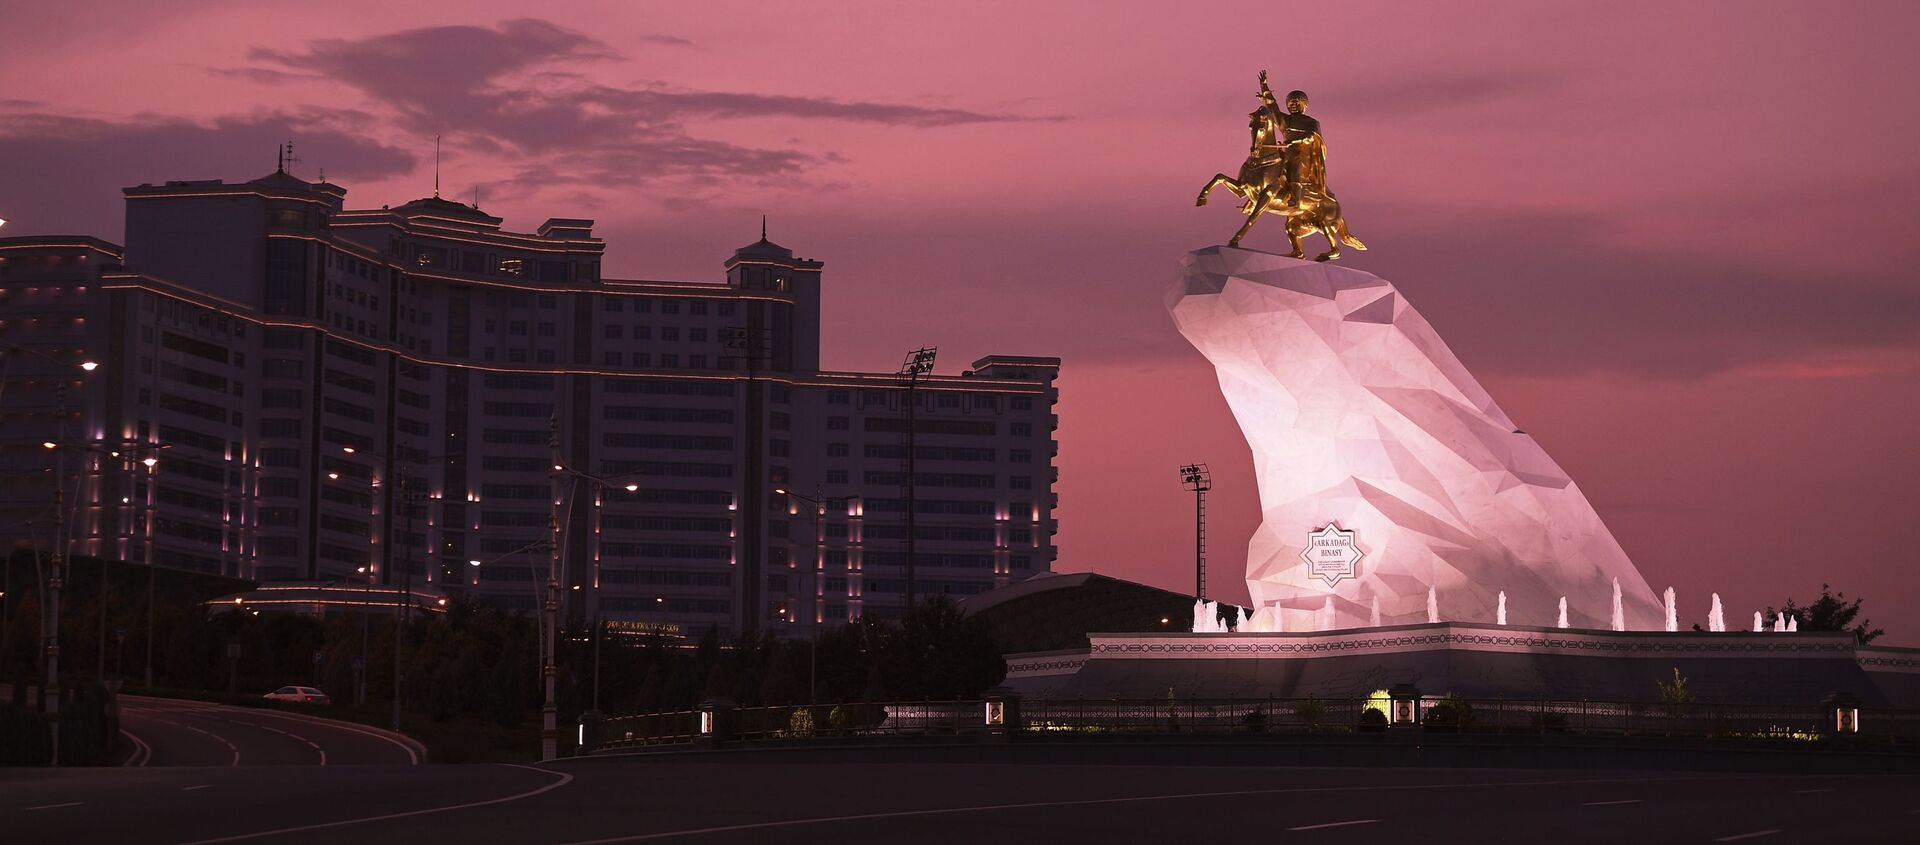 Памятник второму президенту Туркменистана Гурбангулы Бердымухамедову  Аркадаг в Ашхабаде - Sputnik Узбекистан, 1920, 09.08.2018